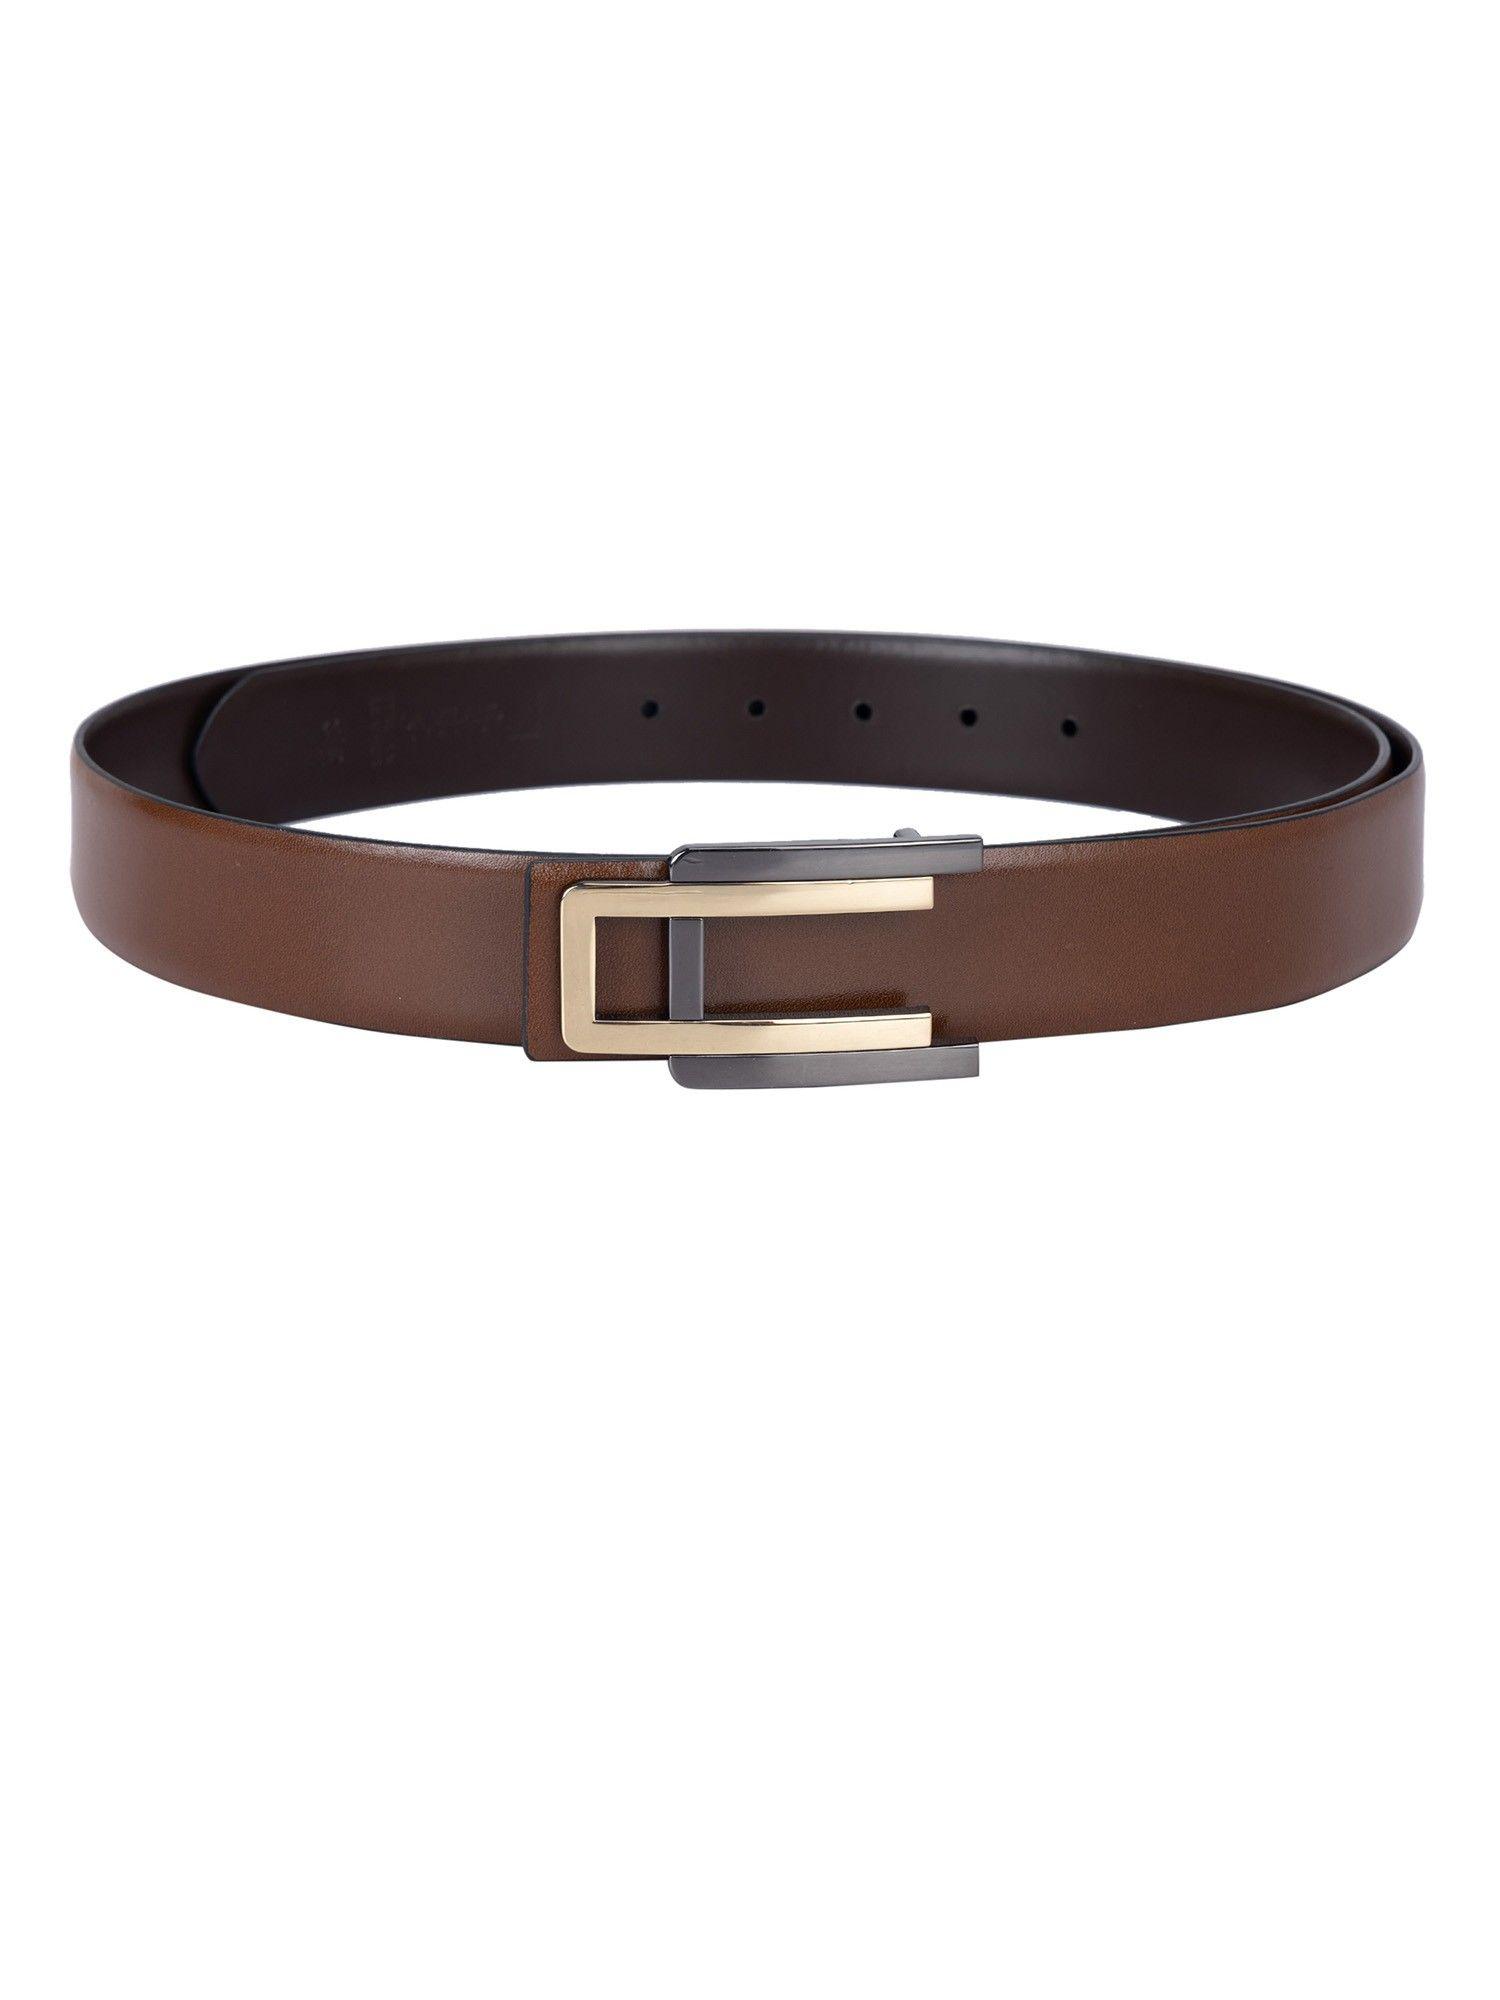 plain leather brown men belt bm-5118a-35-olconpln